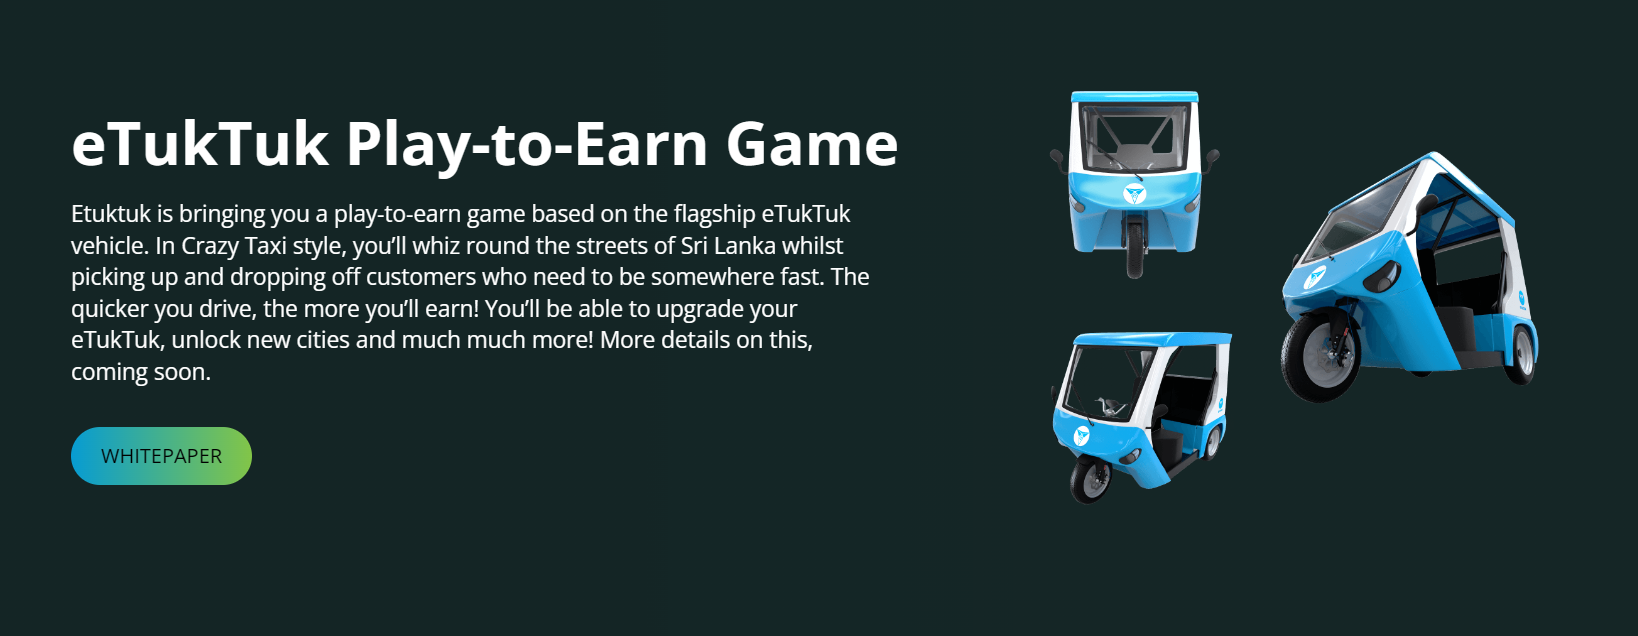 eTukTuk play-to-earn game